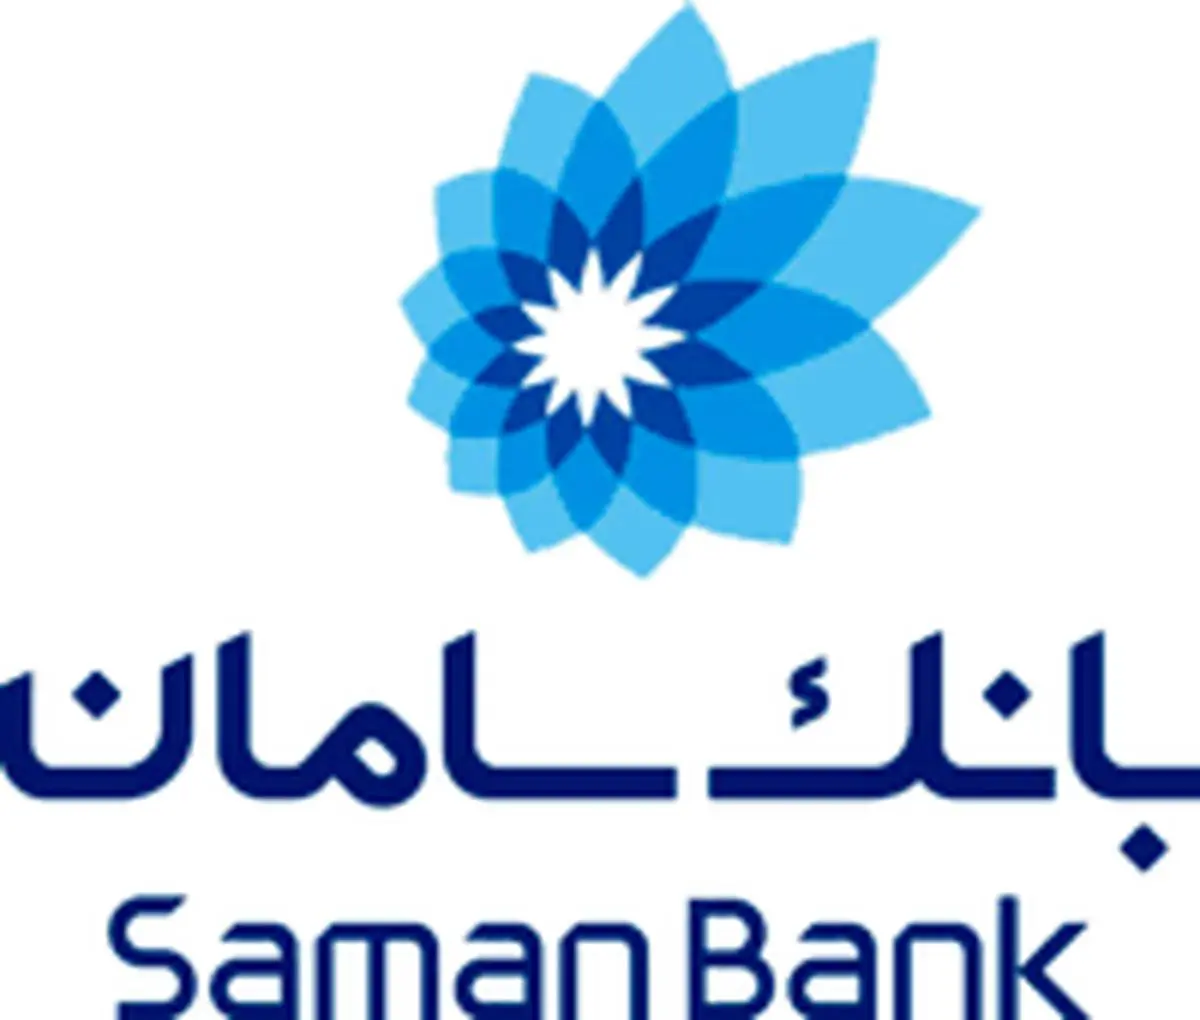 صدور رمز اولیه نت بانک و موبایلت بانک سامان بدون مراجعه به شعبه

